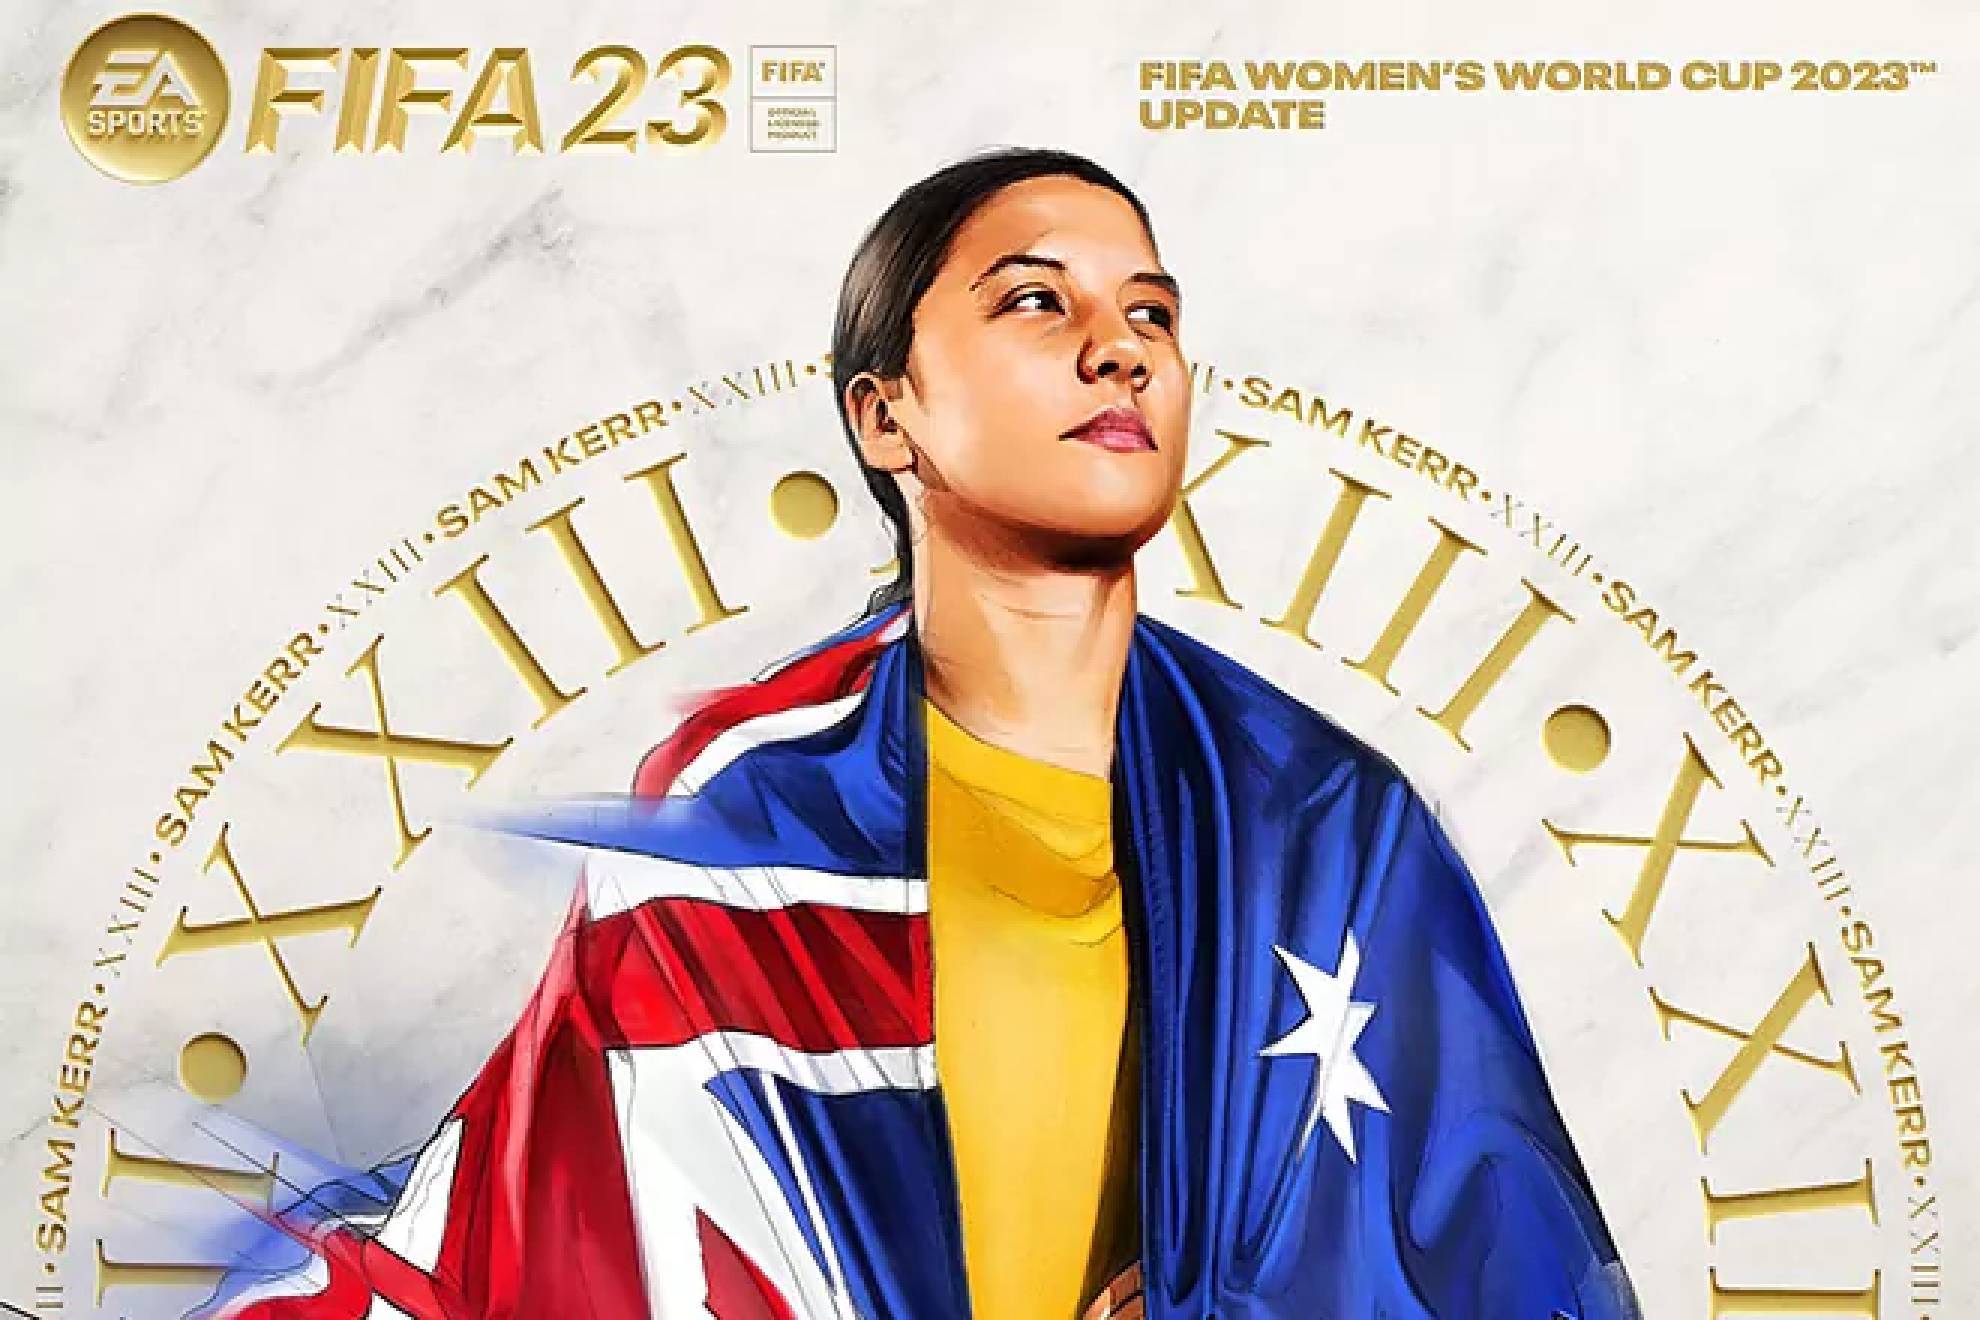 La Copa del Mundo Femenil 2023 llegar como actualizacin final a 'FIFA 23'.